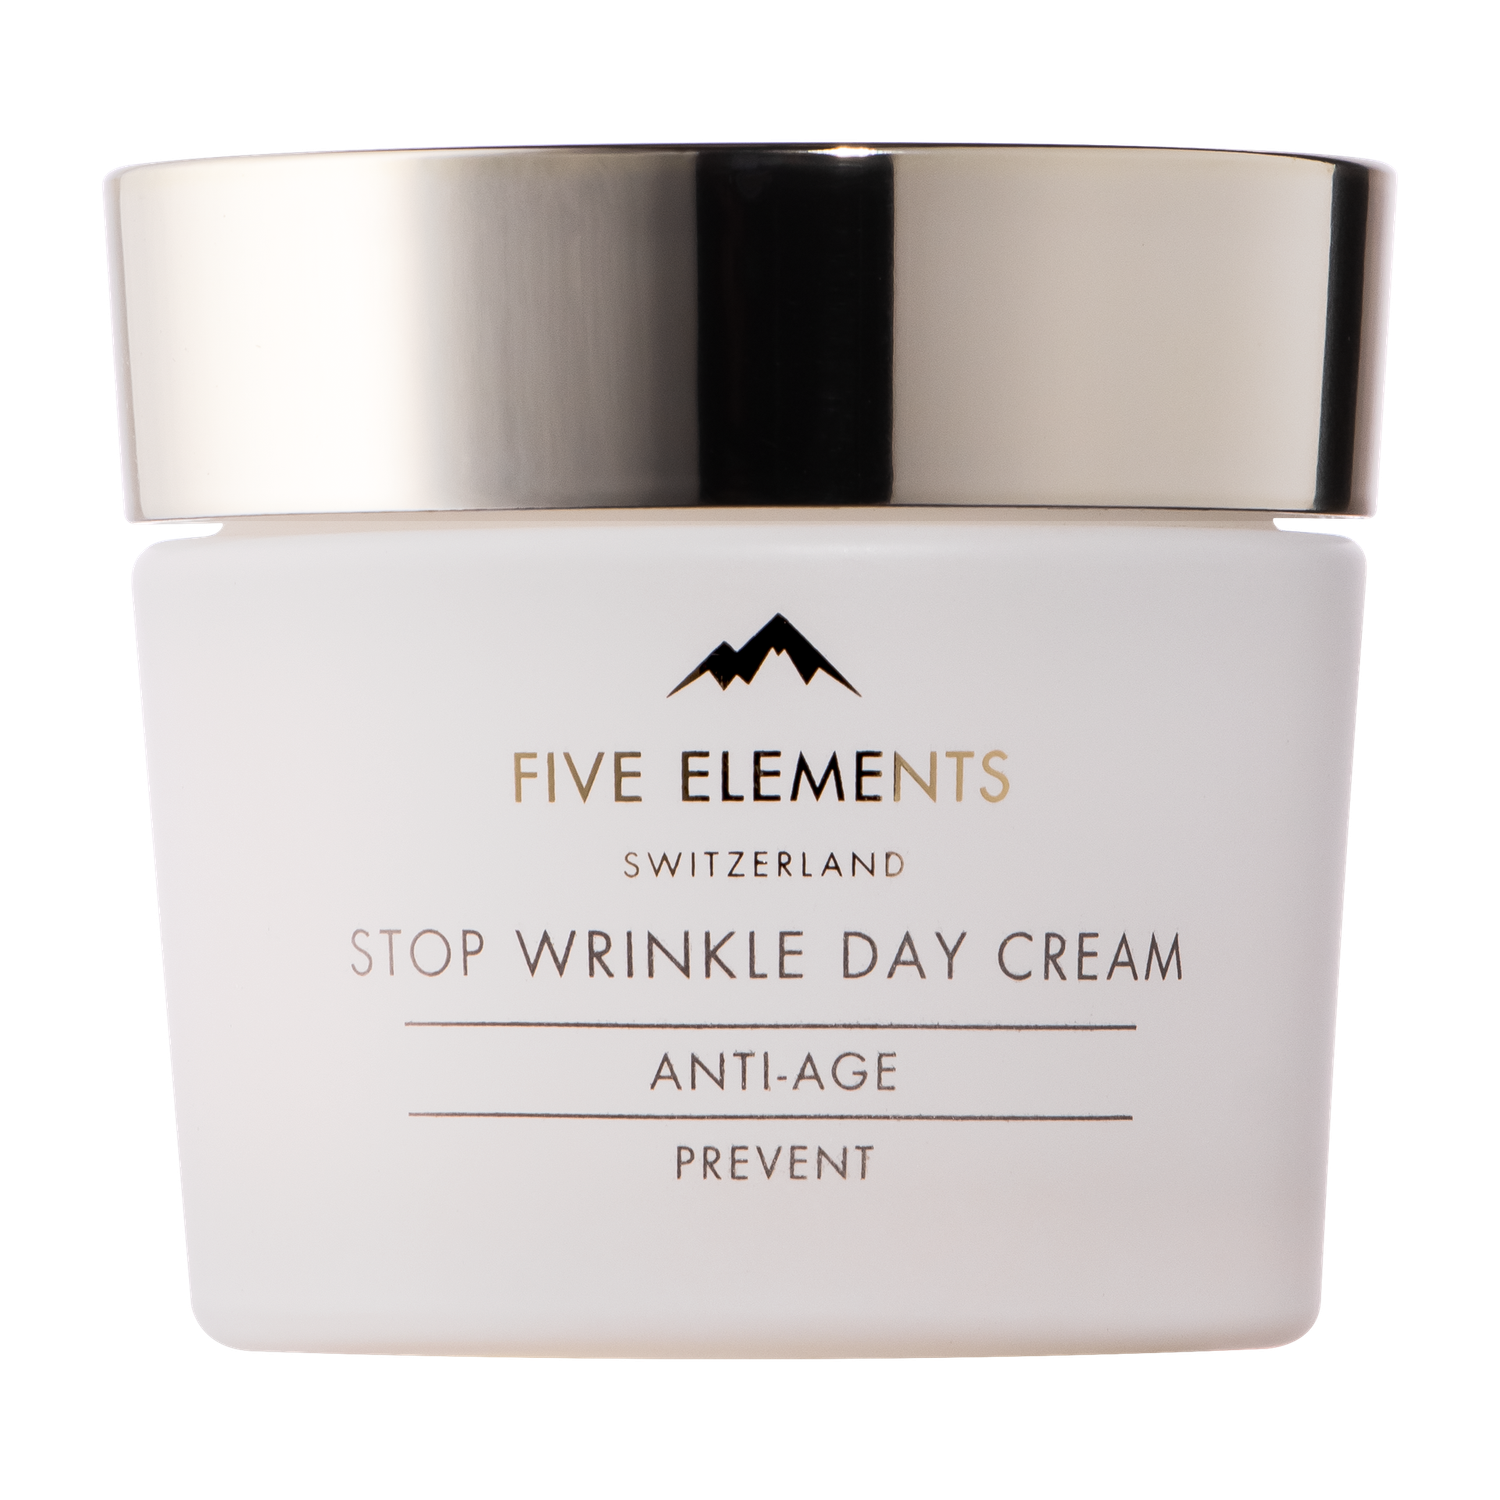 Крем для лица FIVE ELEMENTS Stop Wrinkle Day cream дневной предупреждающий старение кожи 50 мл - фото 1